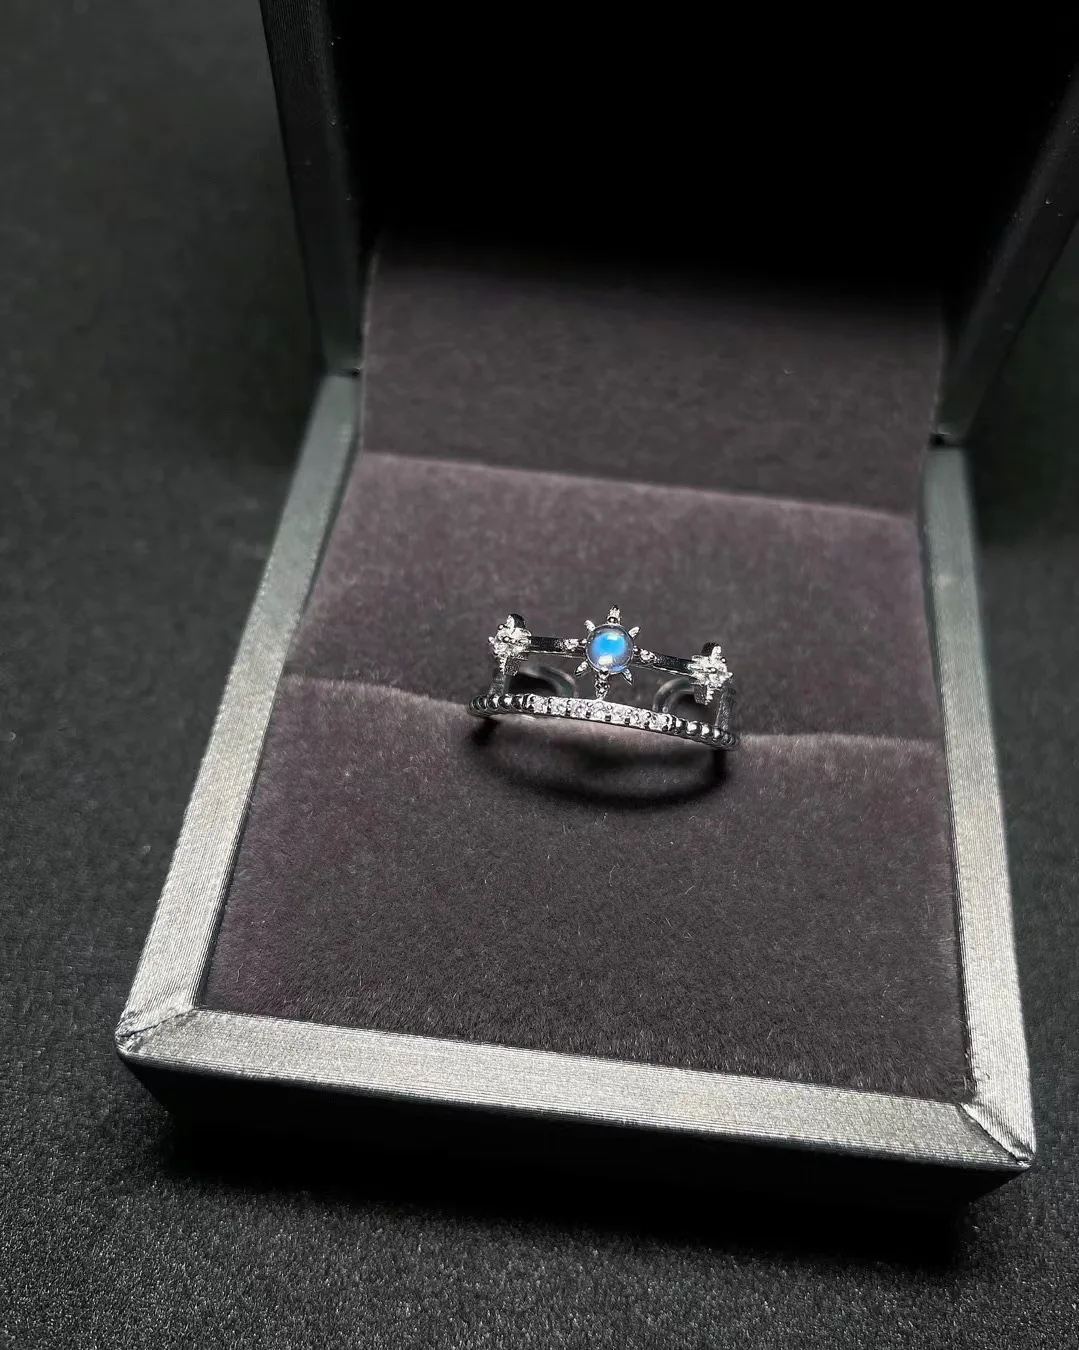 

Кольцо из серебра S925 пробы с натуральным лунным камнем, Незамкнутое дизайнерское кольцо с подвеской в виде короны, без оптимизированного основного камня